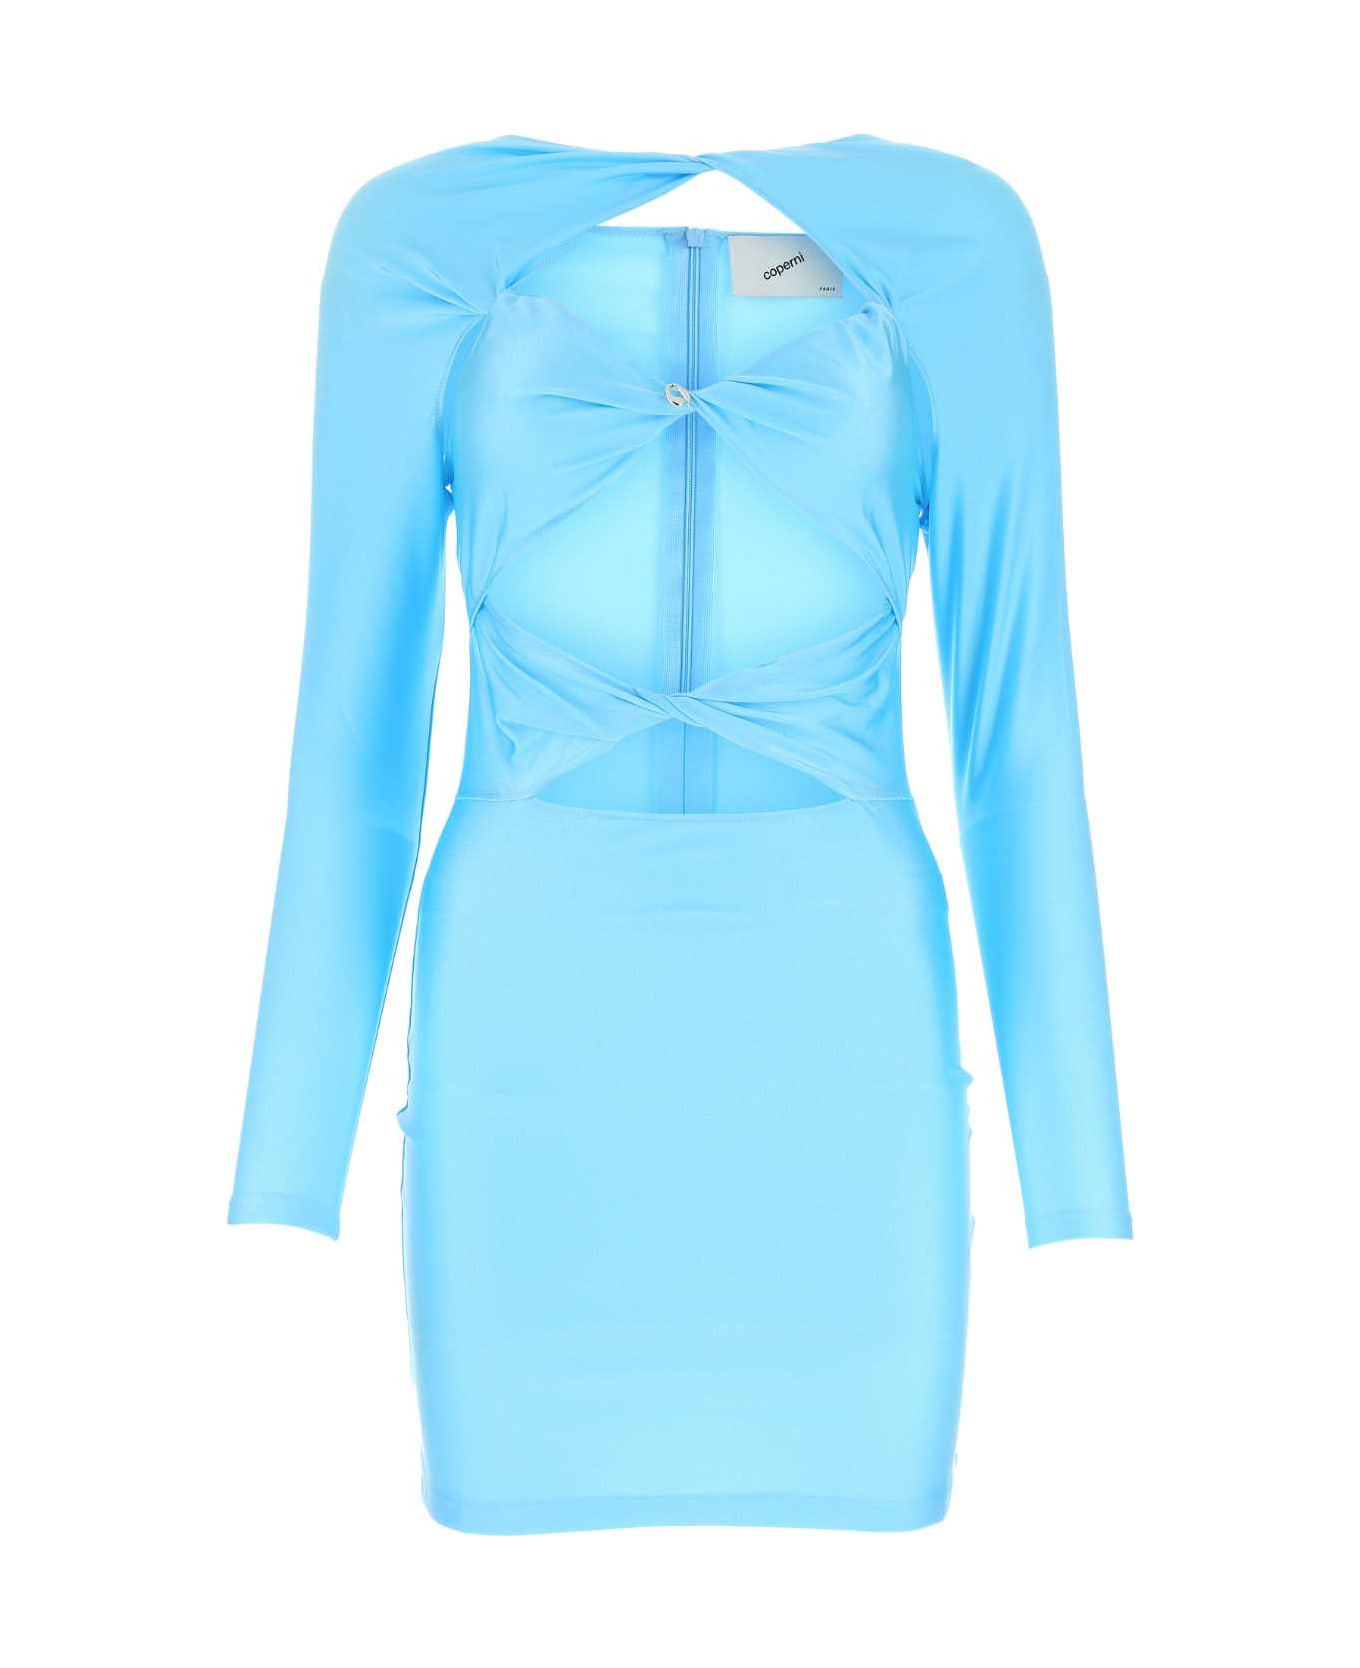 Coperni Light Blue Stretch Nylon Dress - TURQSE